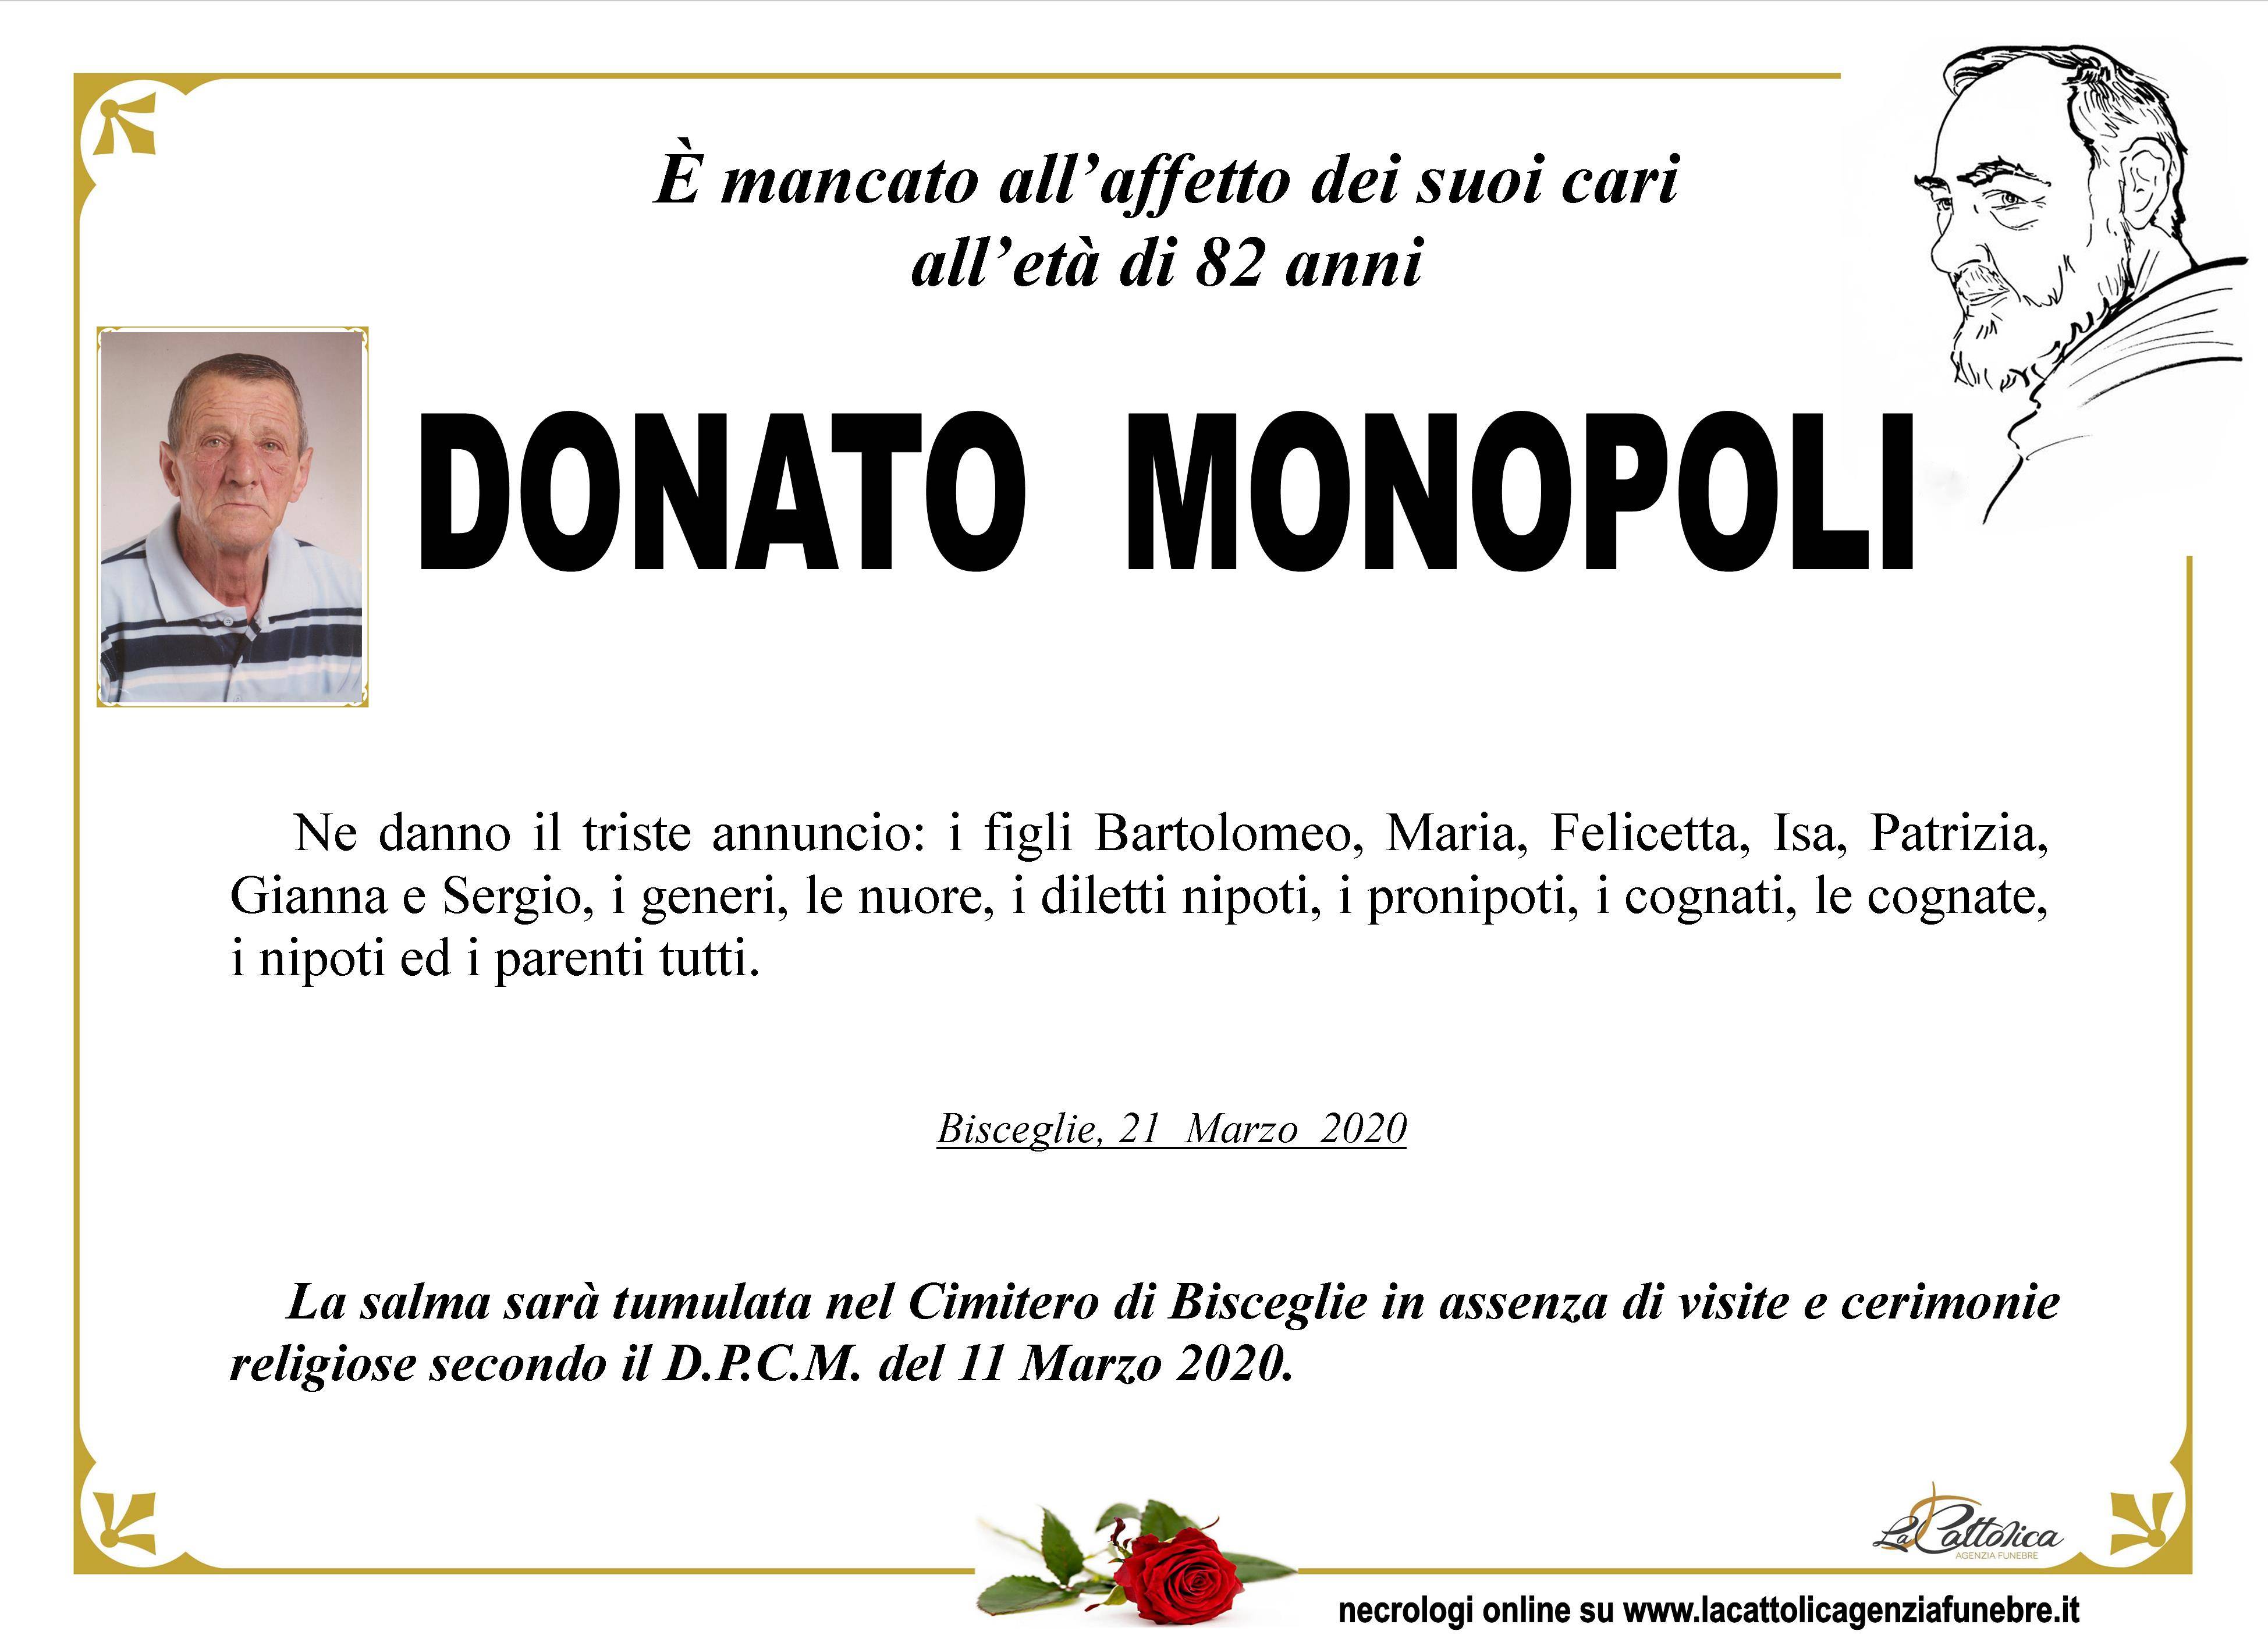 Donato Monopoli